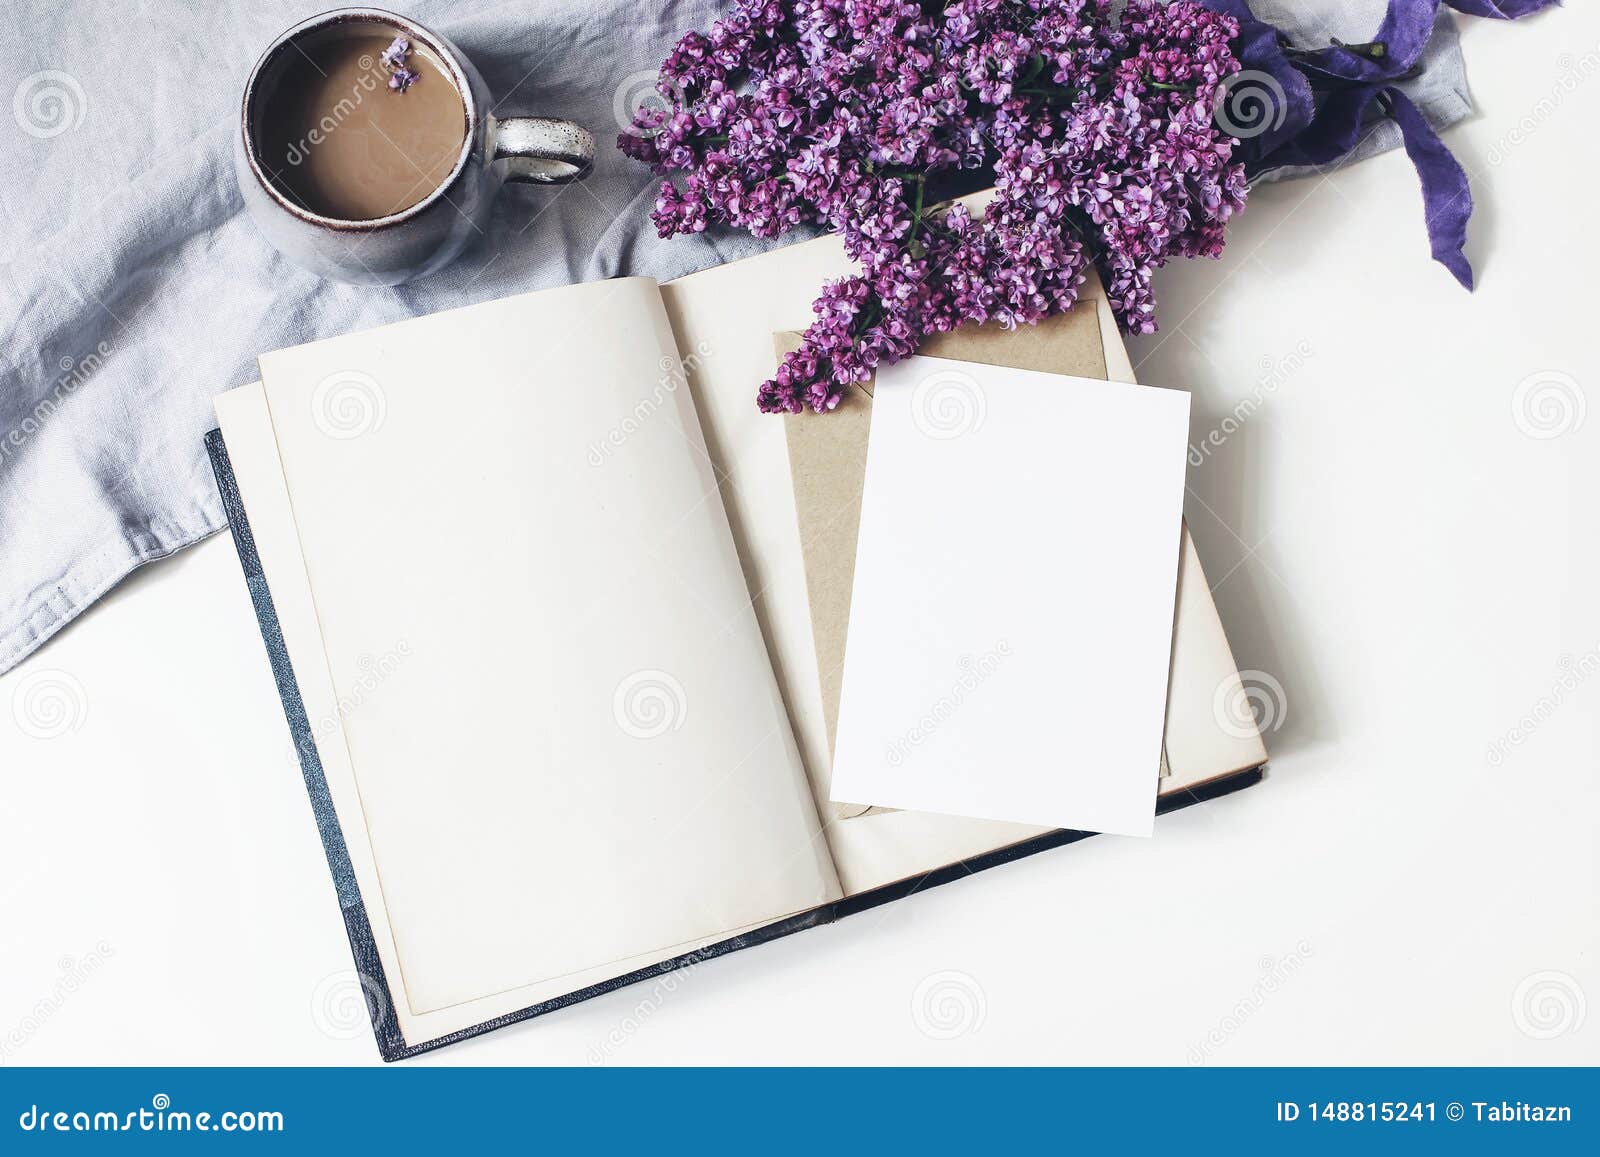 春天女性场面 花卉构成束紫色和白色淡紫色花 旧书 咖啡和亚麻布库存图片 图片包括有